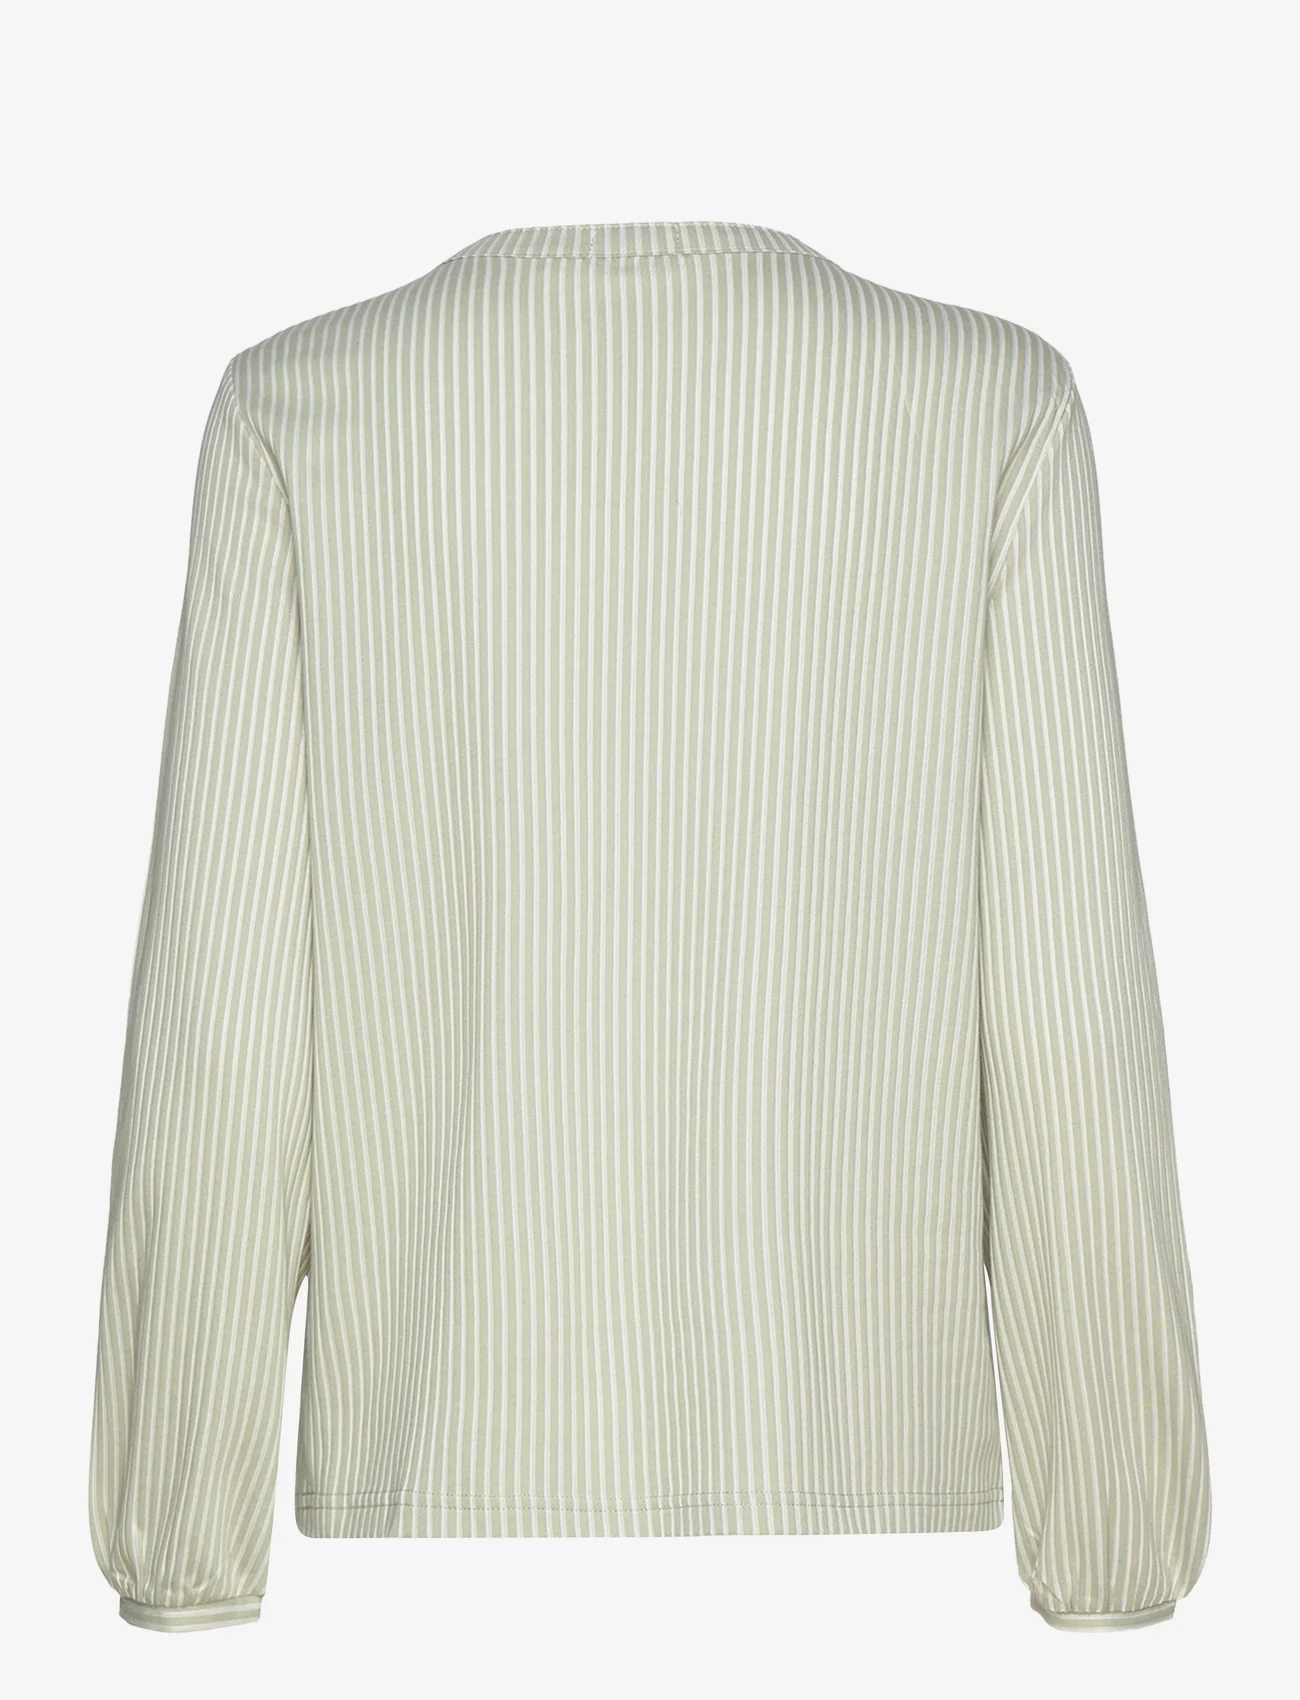 Tom Tailor - T-shirt blouse vertical stripe - long-sleeved blouses - desert green white thin stripe - 1